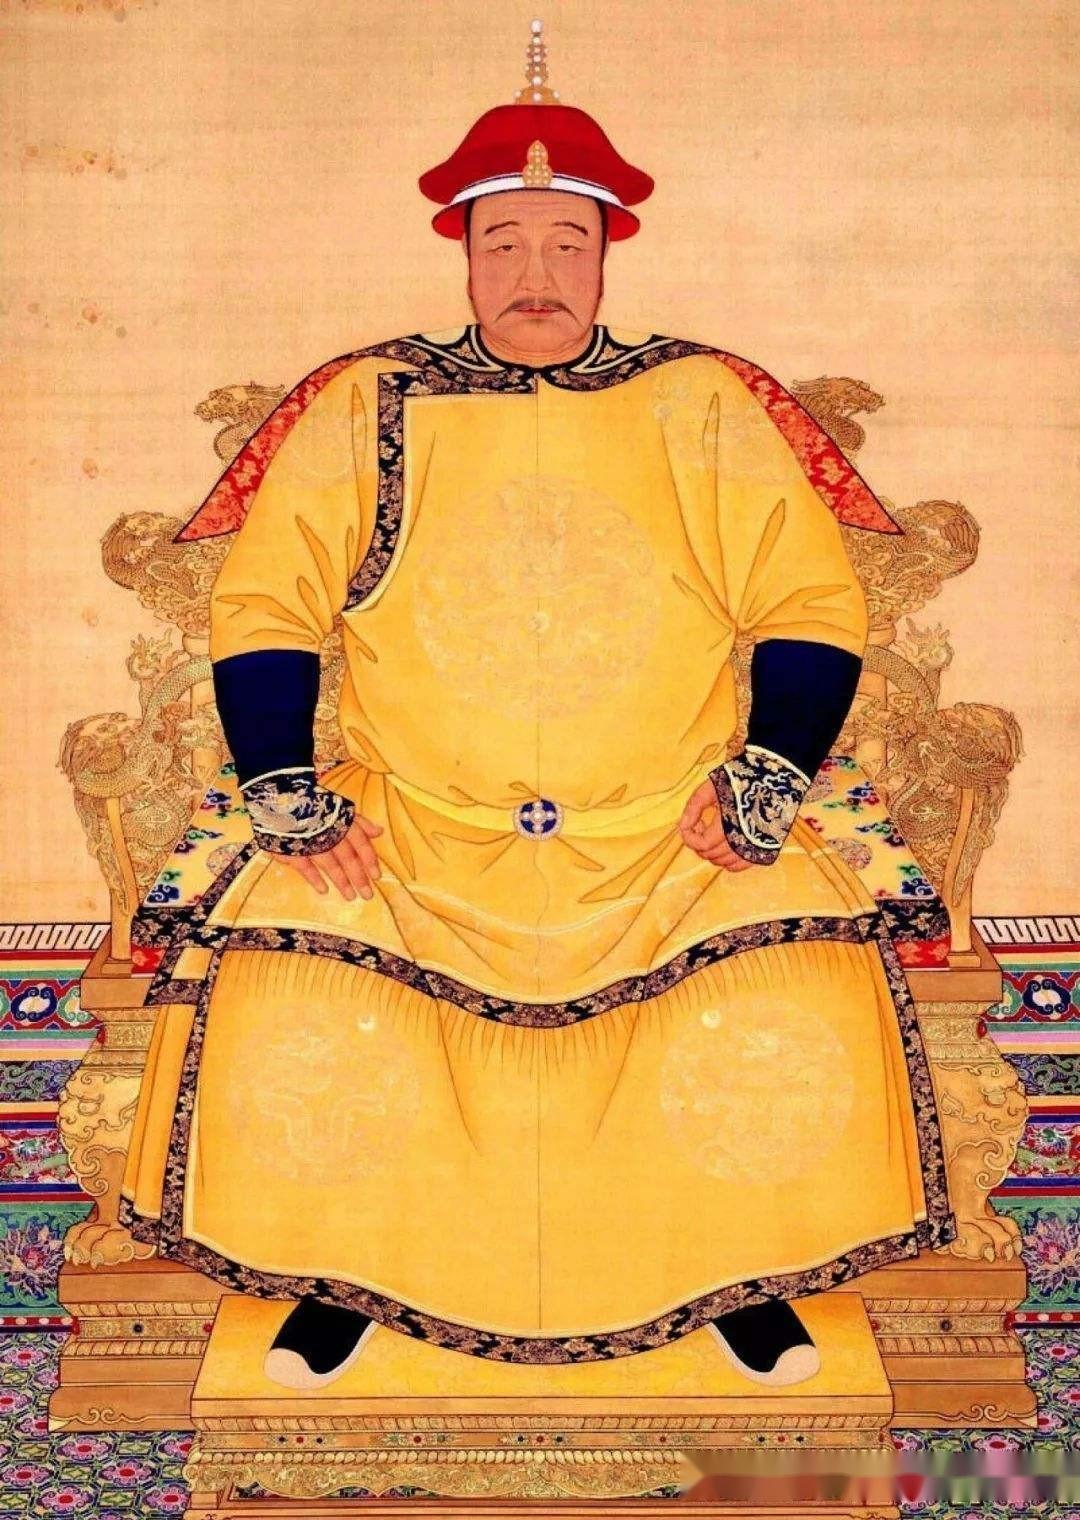 为什么清朝皇帝和蒙古王公的关系那么亲密? 